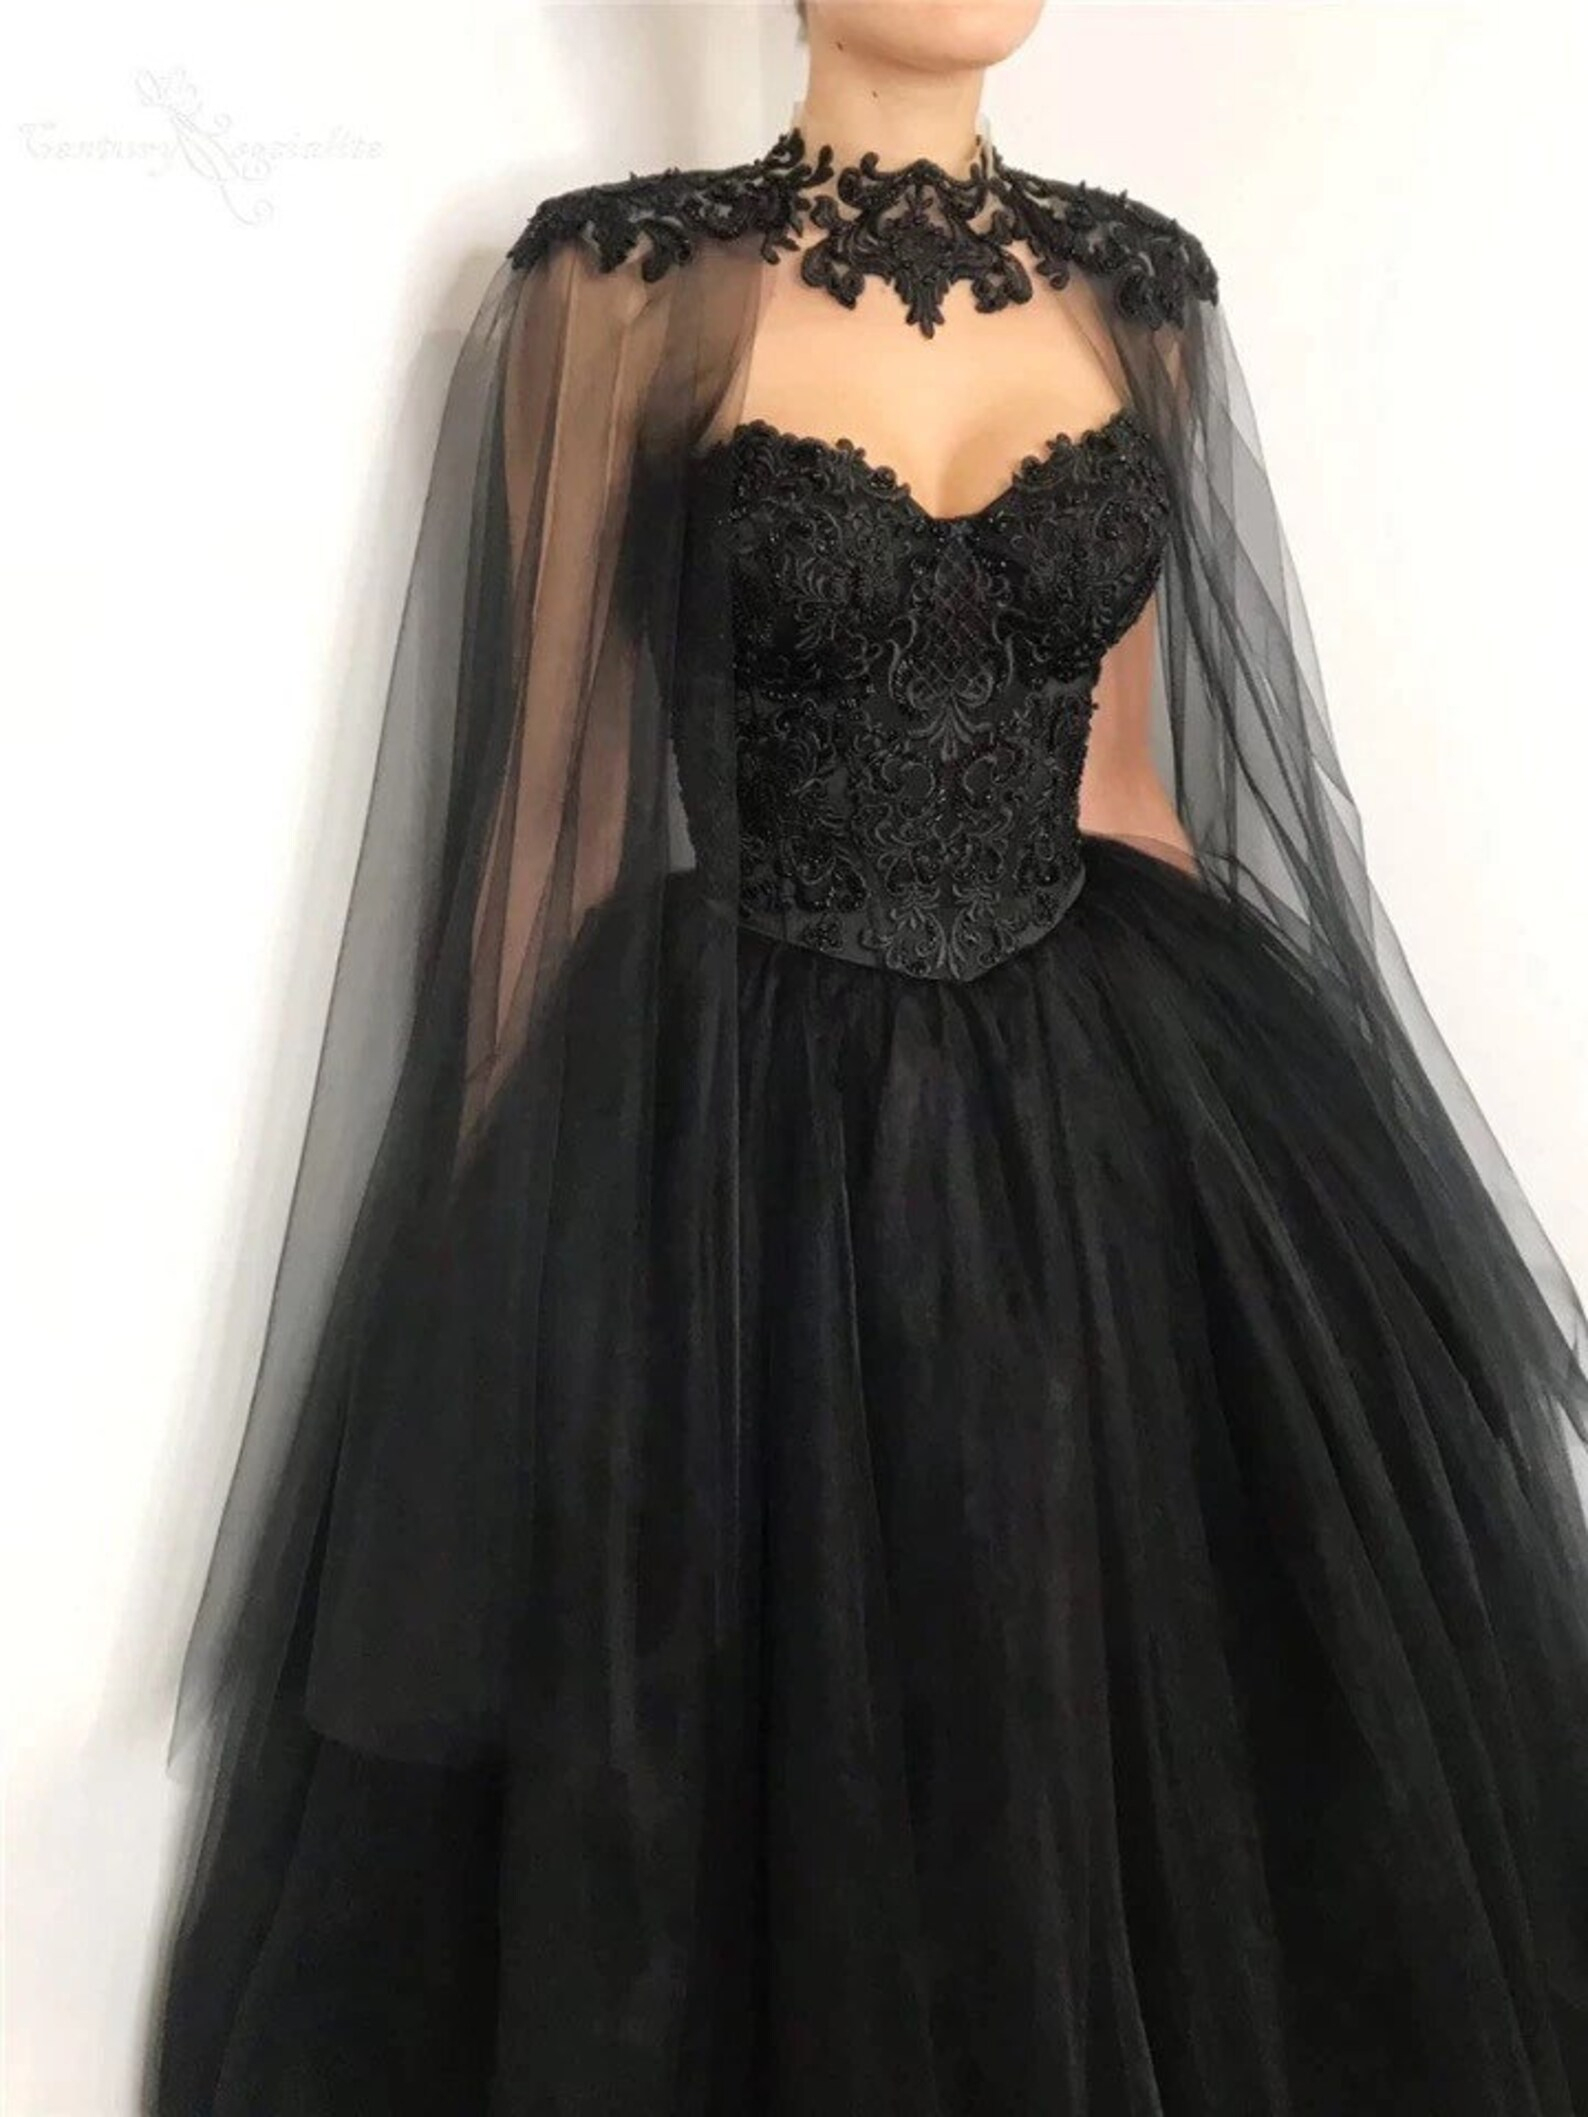 Robe De Mariée Gothique Robe De Mariée Noire Gothique Robe | Etsy serapportantà Robe De Mariée Gothique